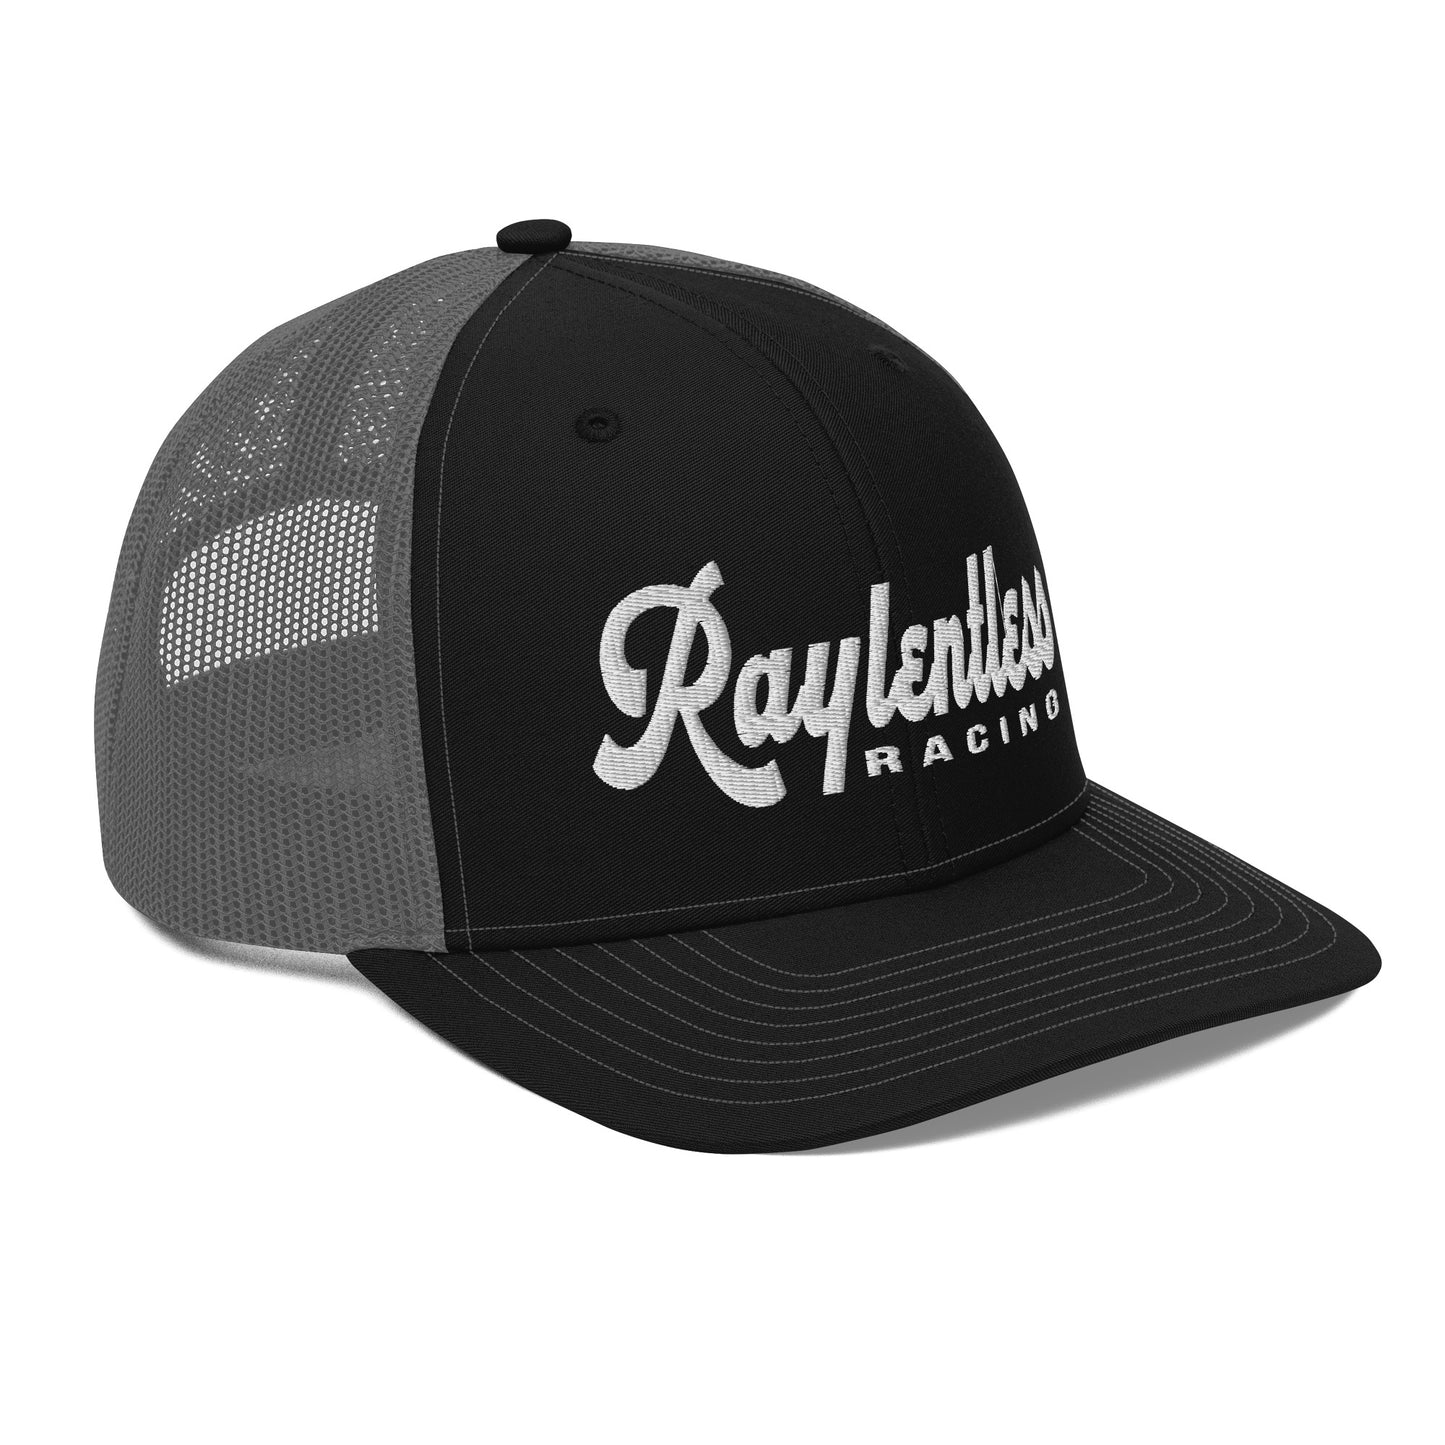 Raylentless Racing Richardson Trucker Cap